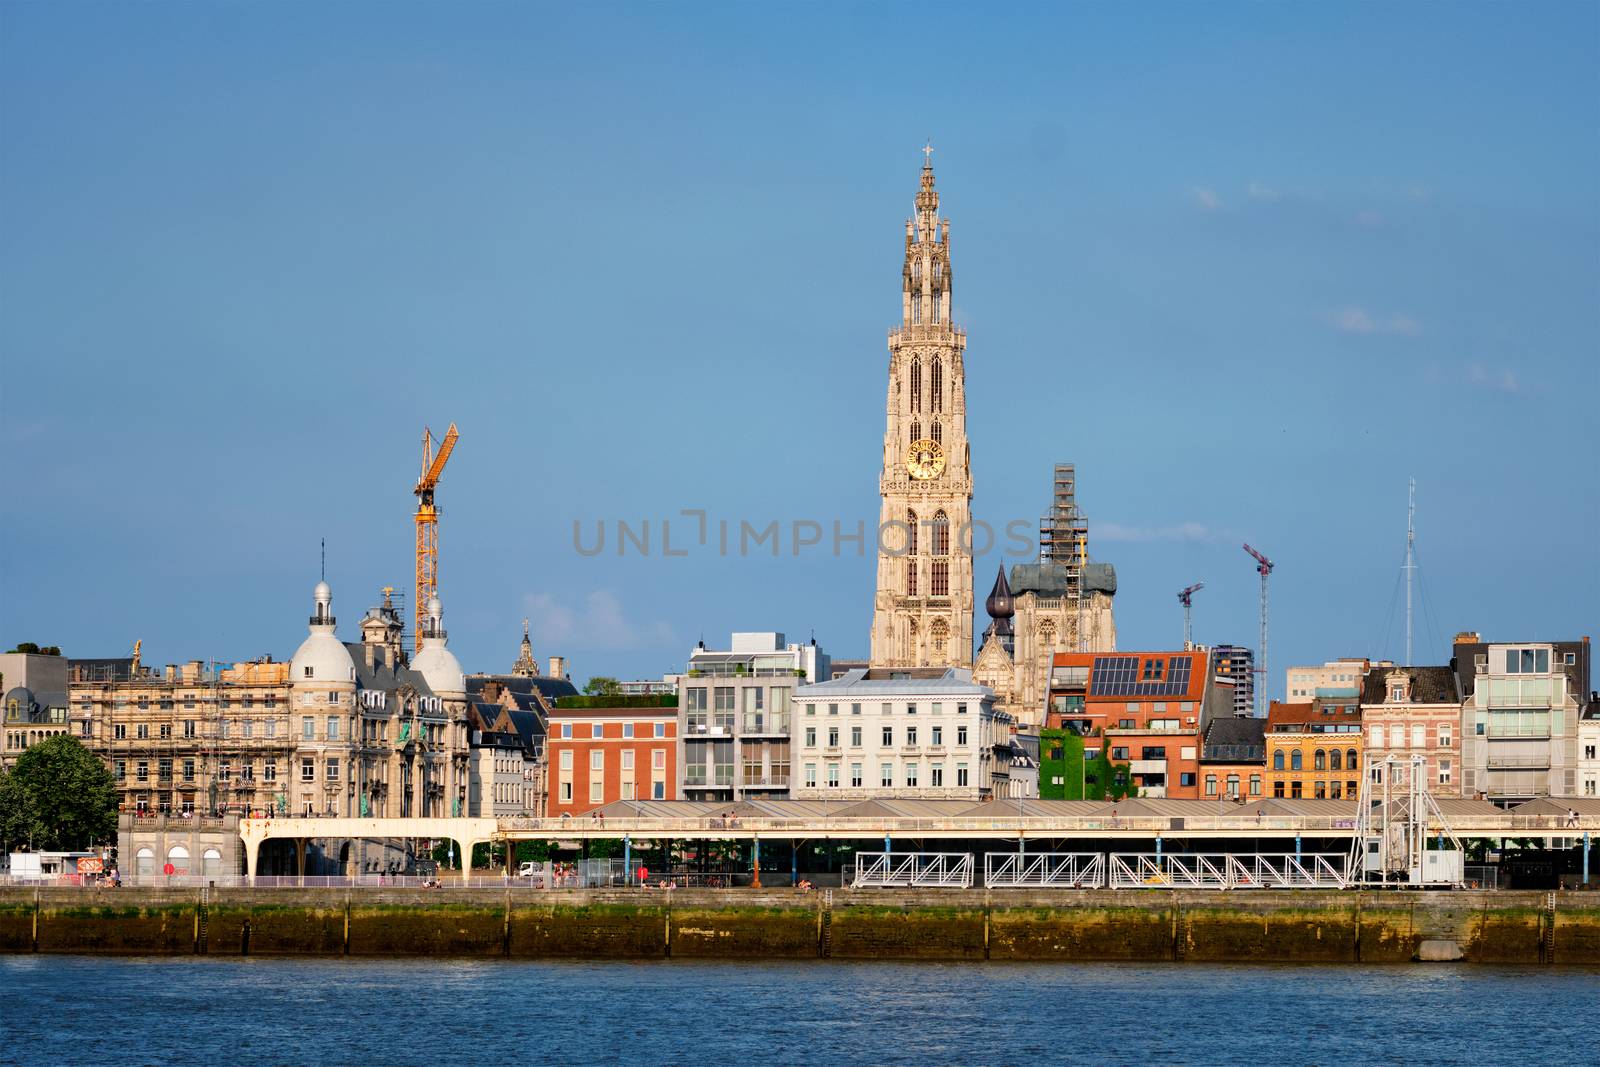 View of Antwerp over the River Scheldt, Belgium.